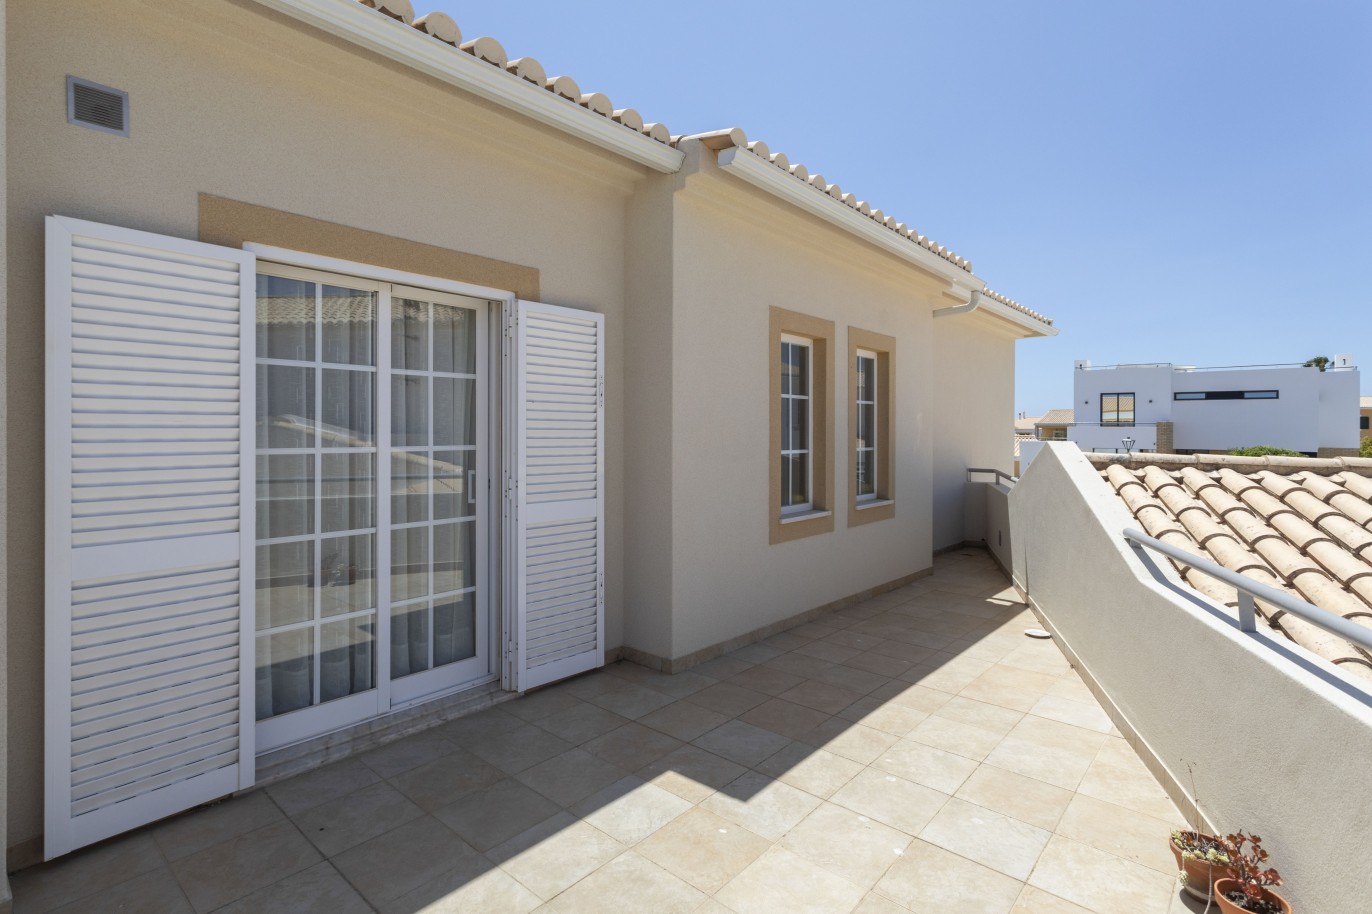 Villa de 3 dormitorios en venta en Porto de Mós, Algarve_233241